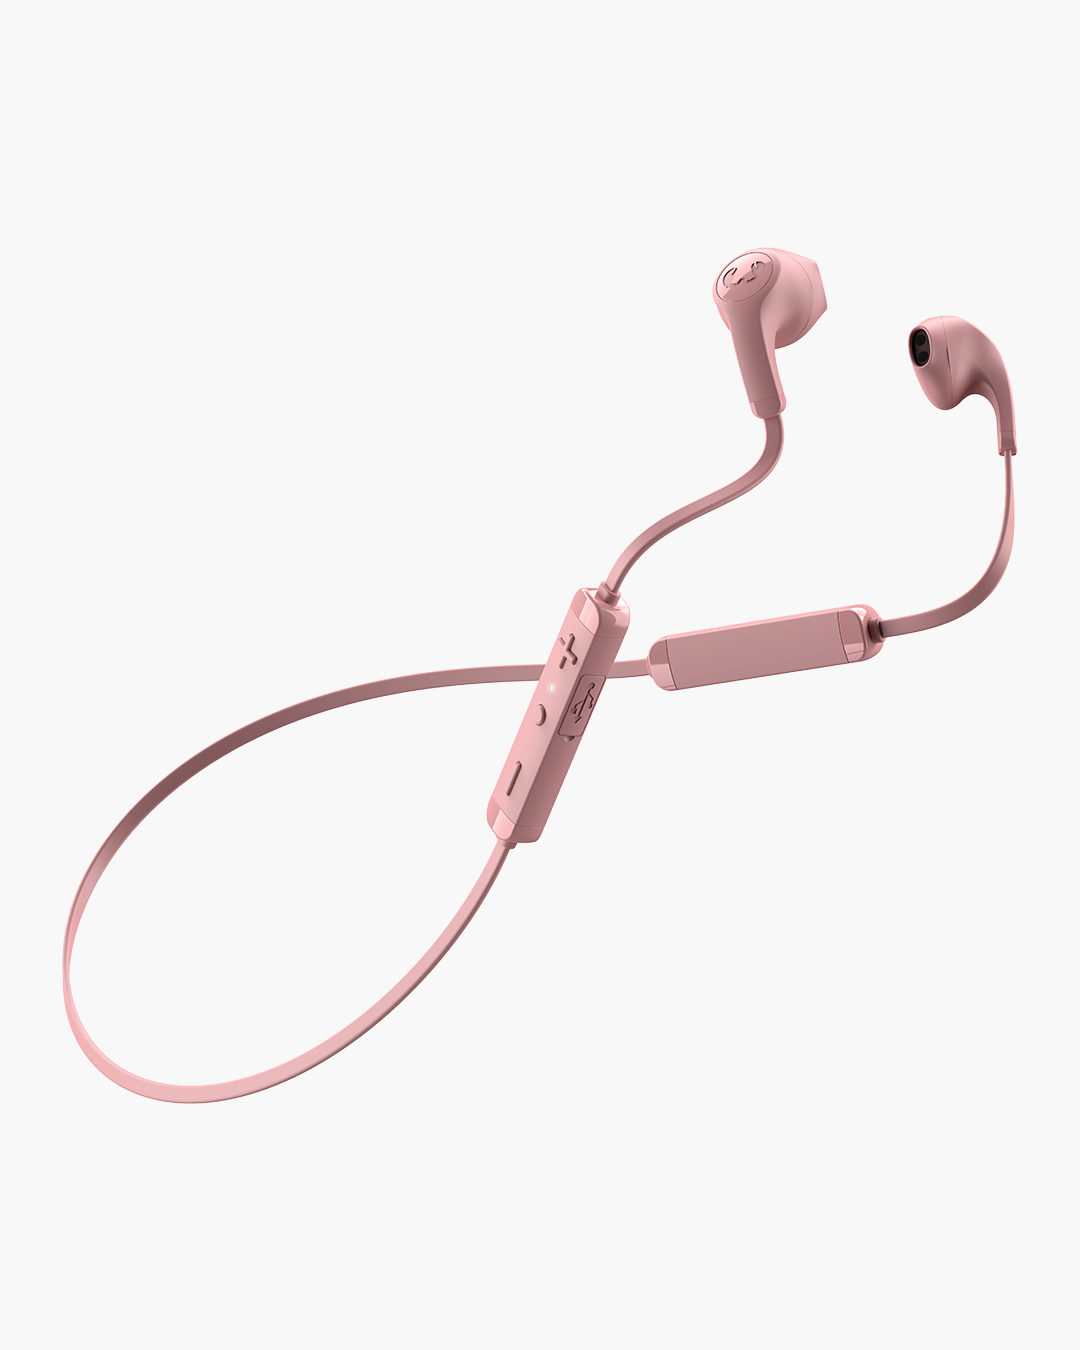 Fresh 'n Rebel - Flow Wireless - In-ear headphones - Dusty Pink